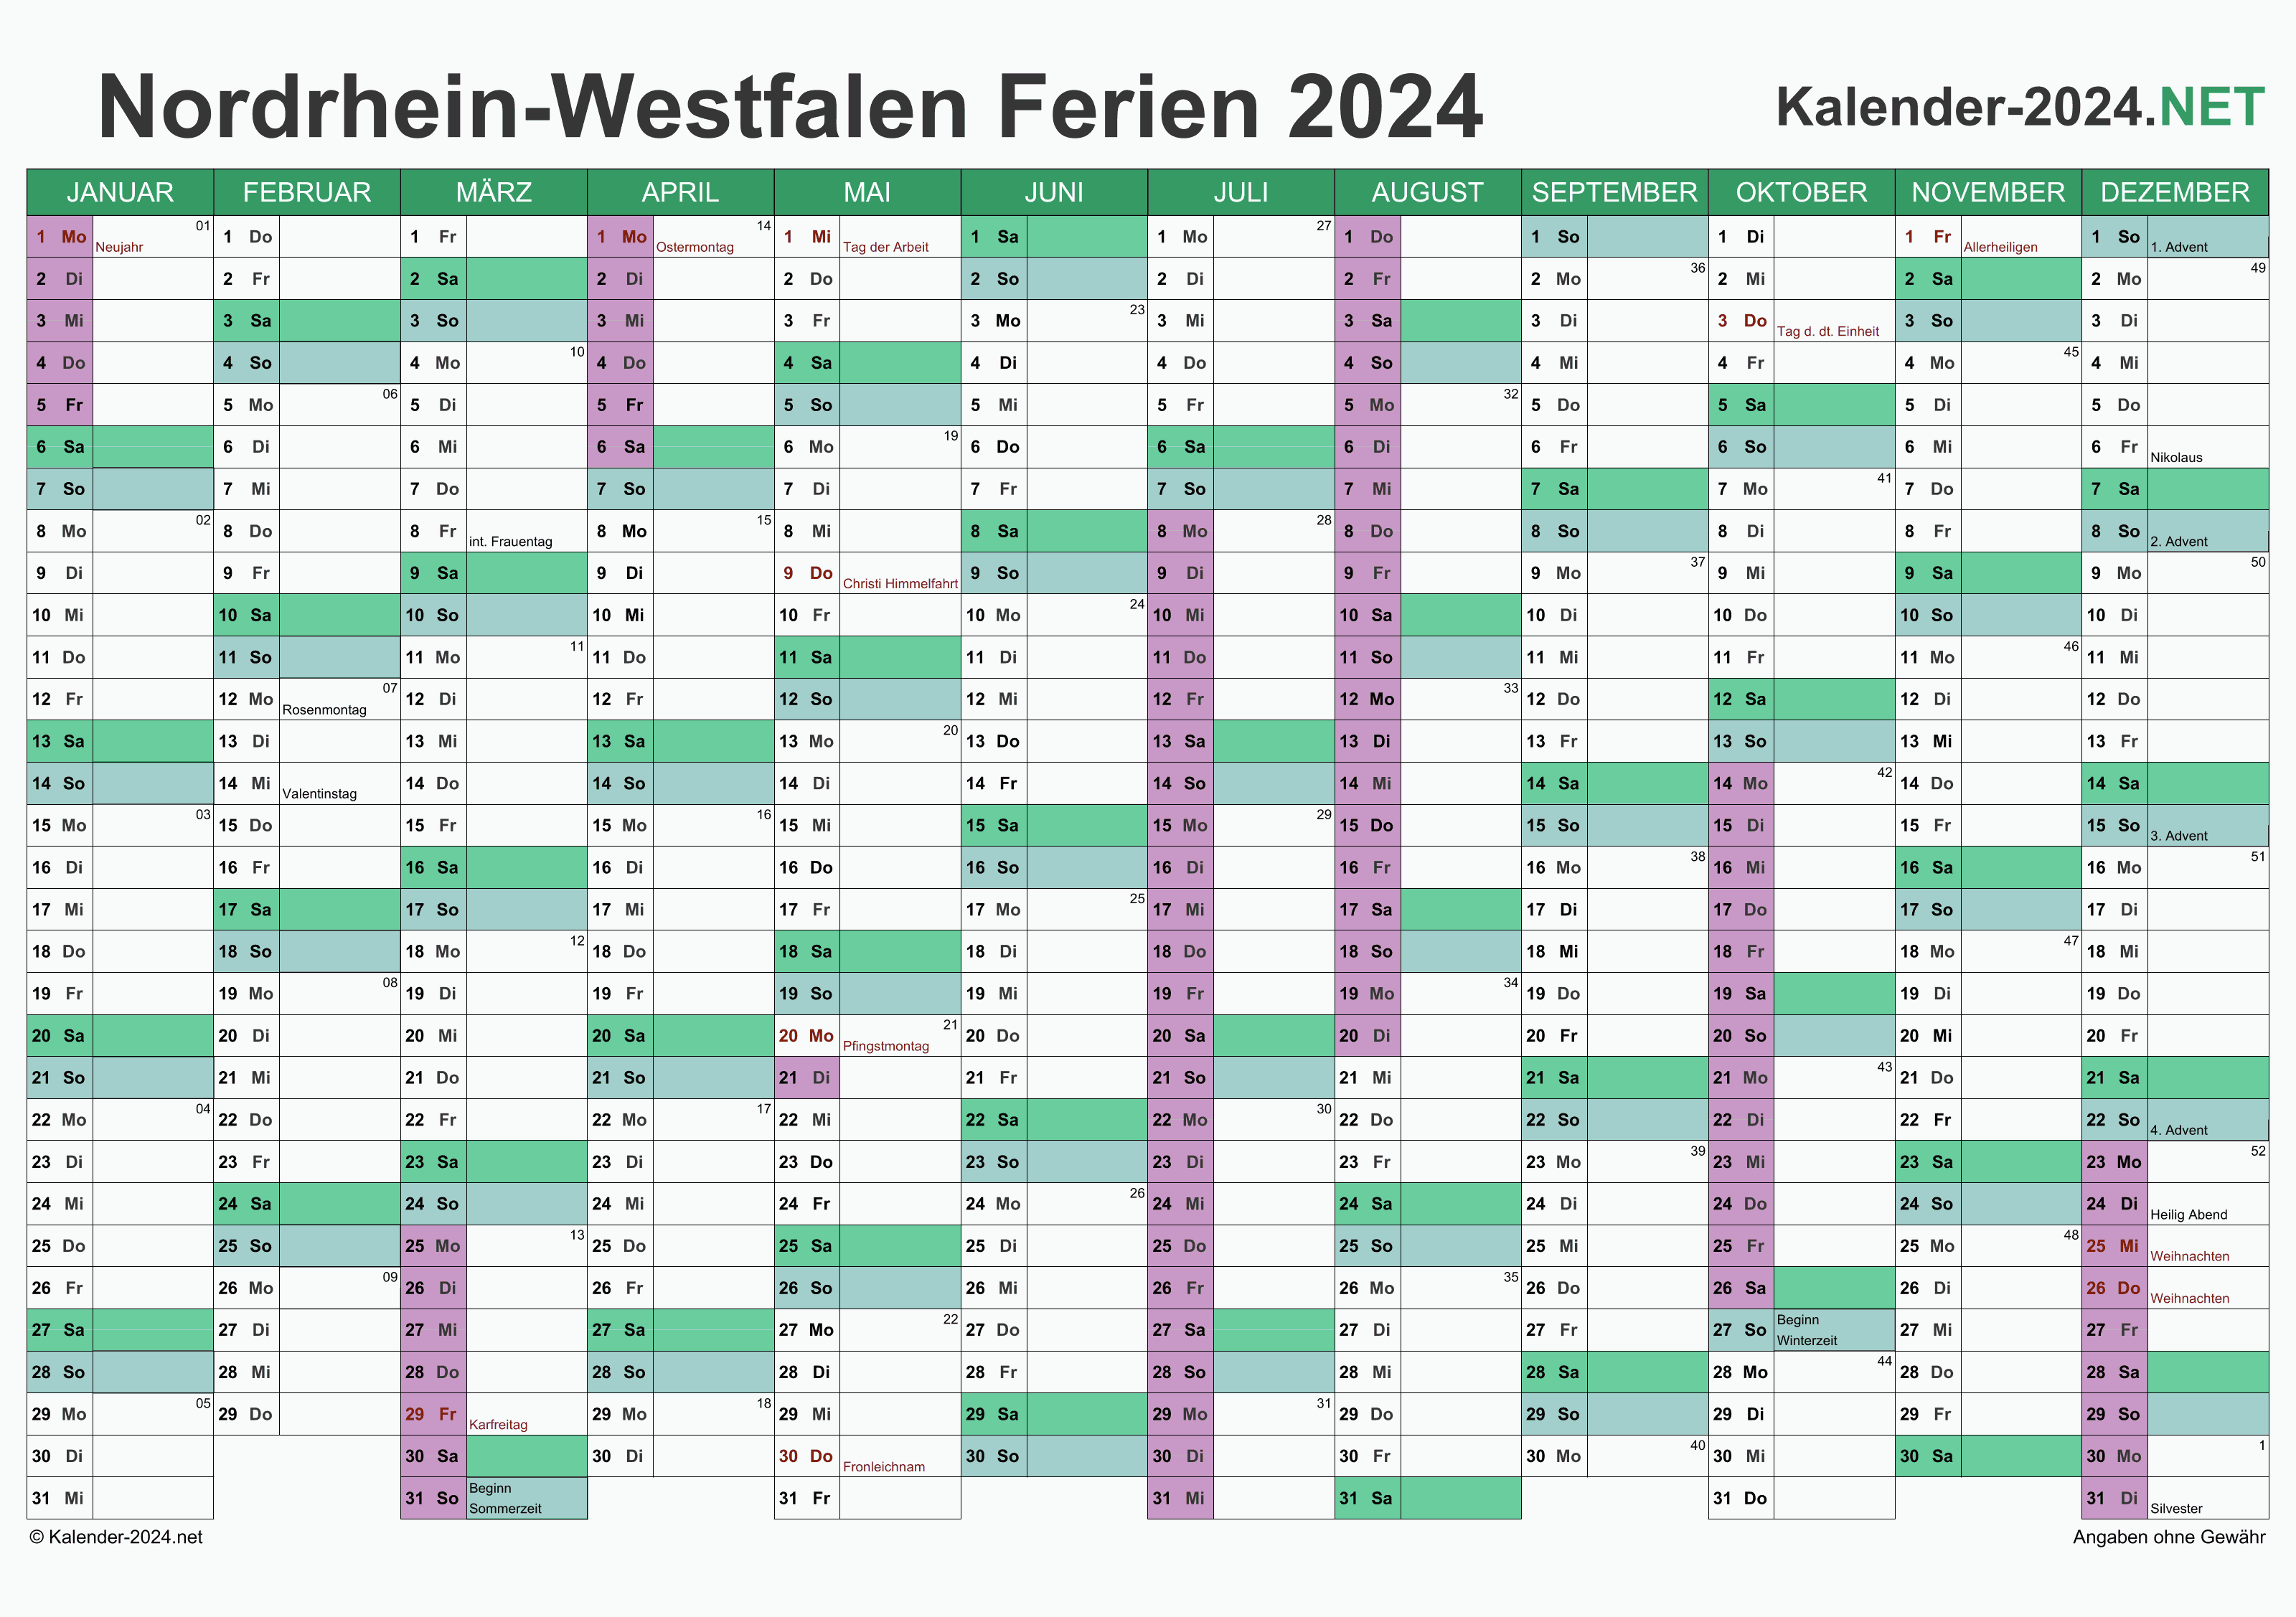 FERIEN NordrheinWestfalen 2024 Ferienkalender & Übersicht